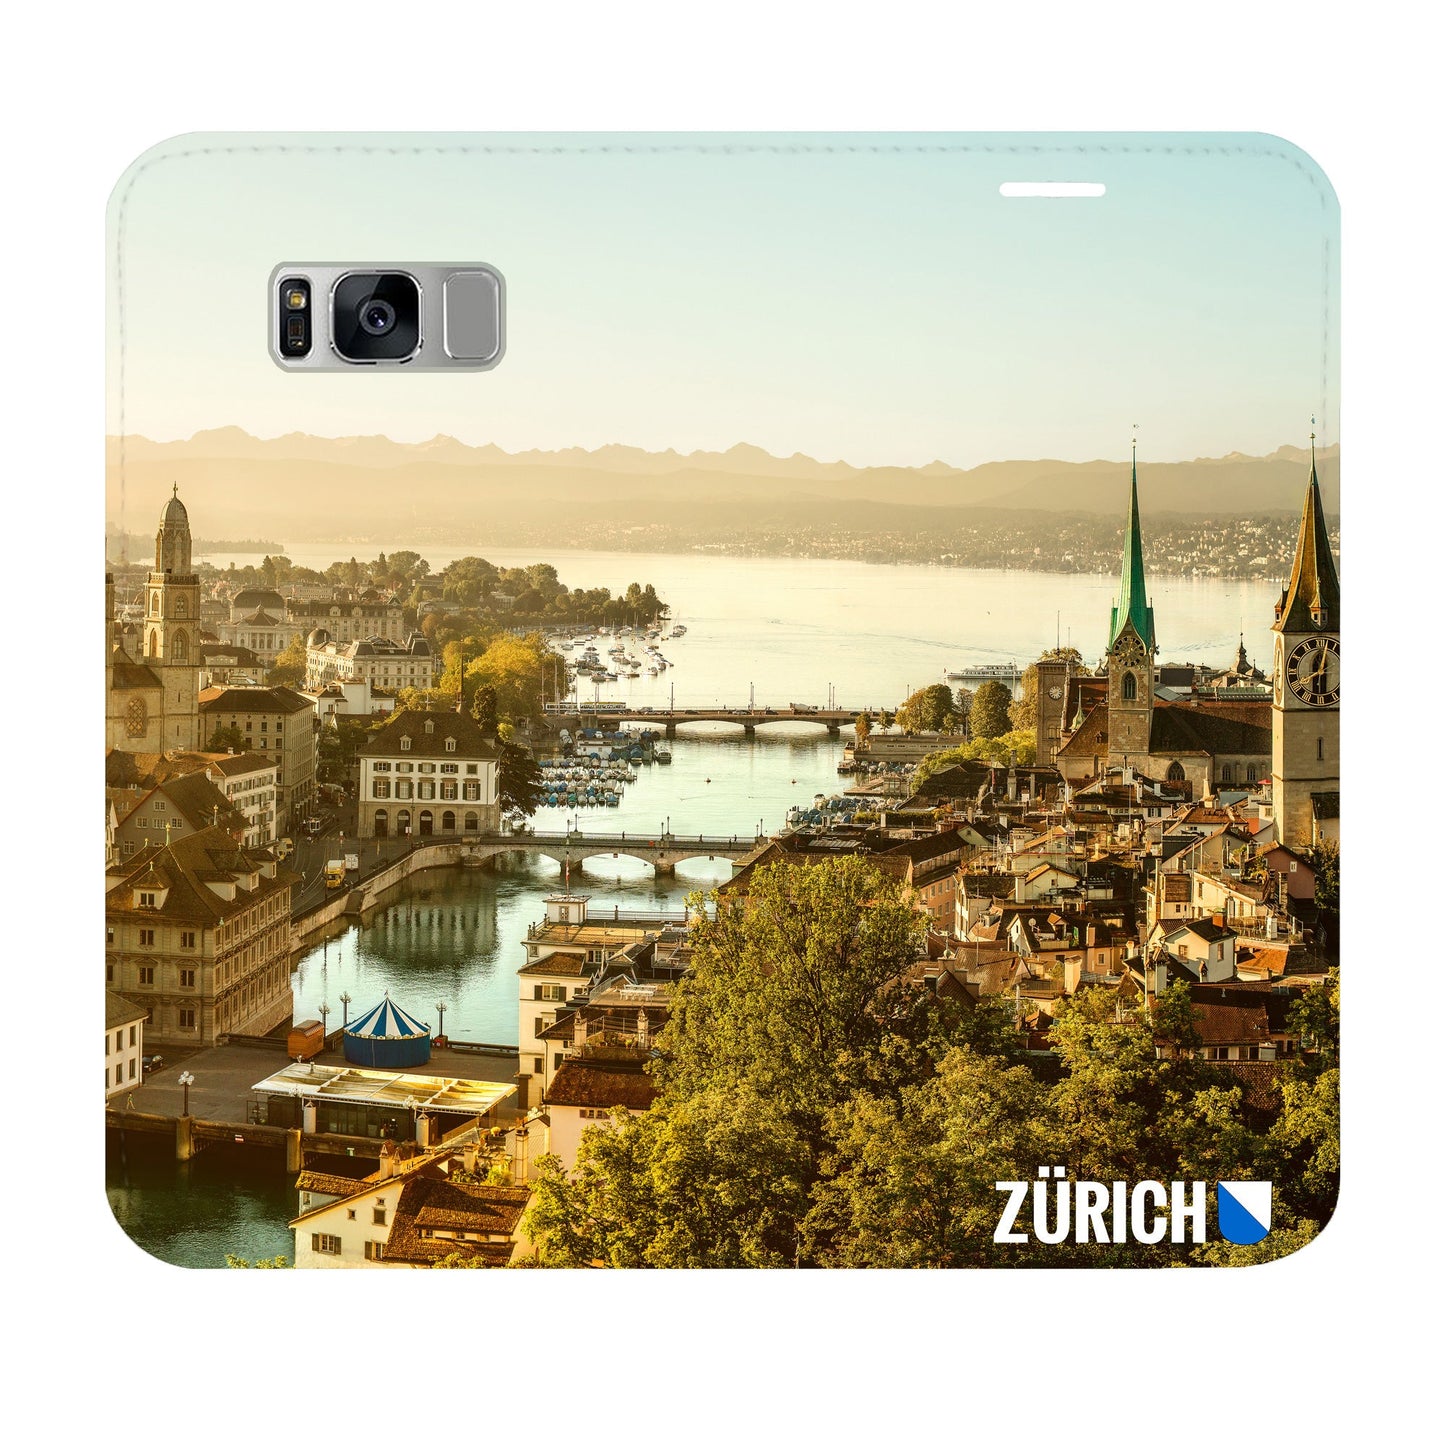 Zürich City von Oben Panorama Case für Samsung Galaxy S8